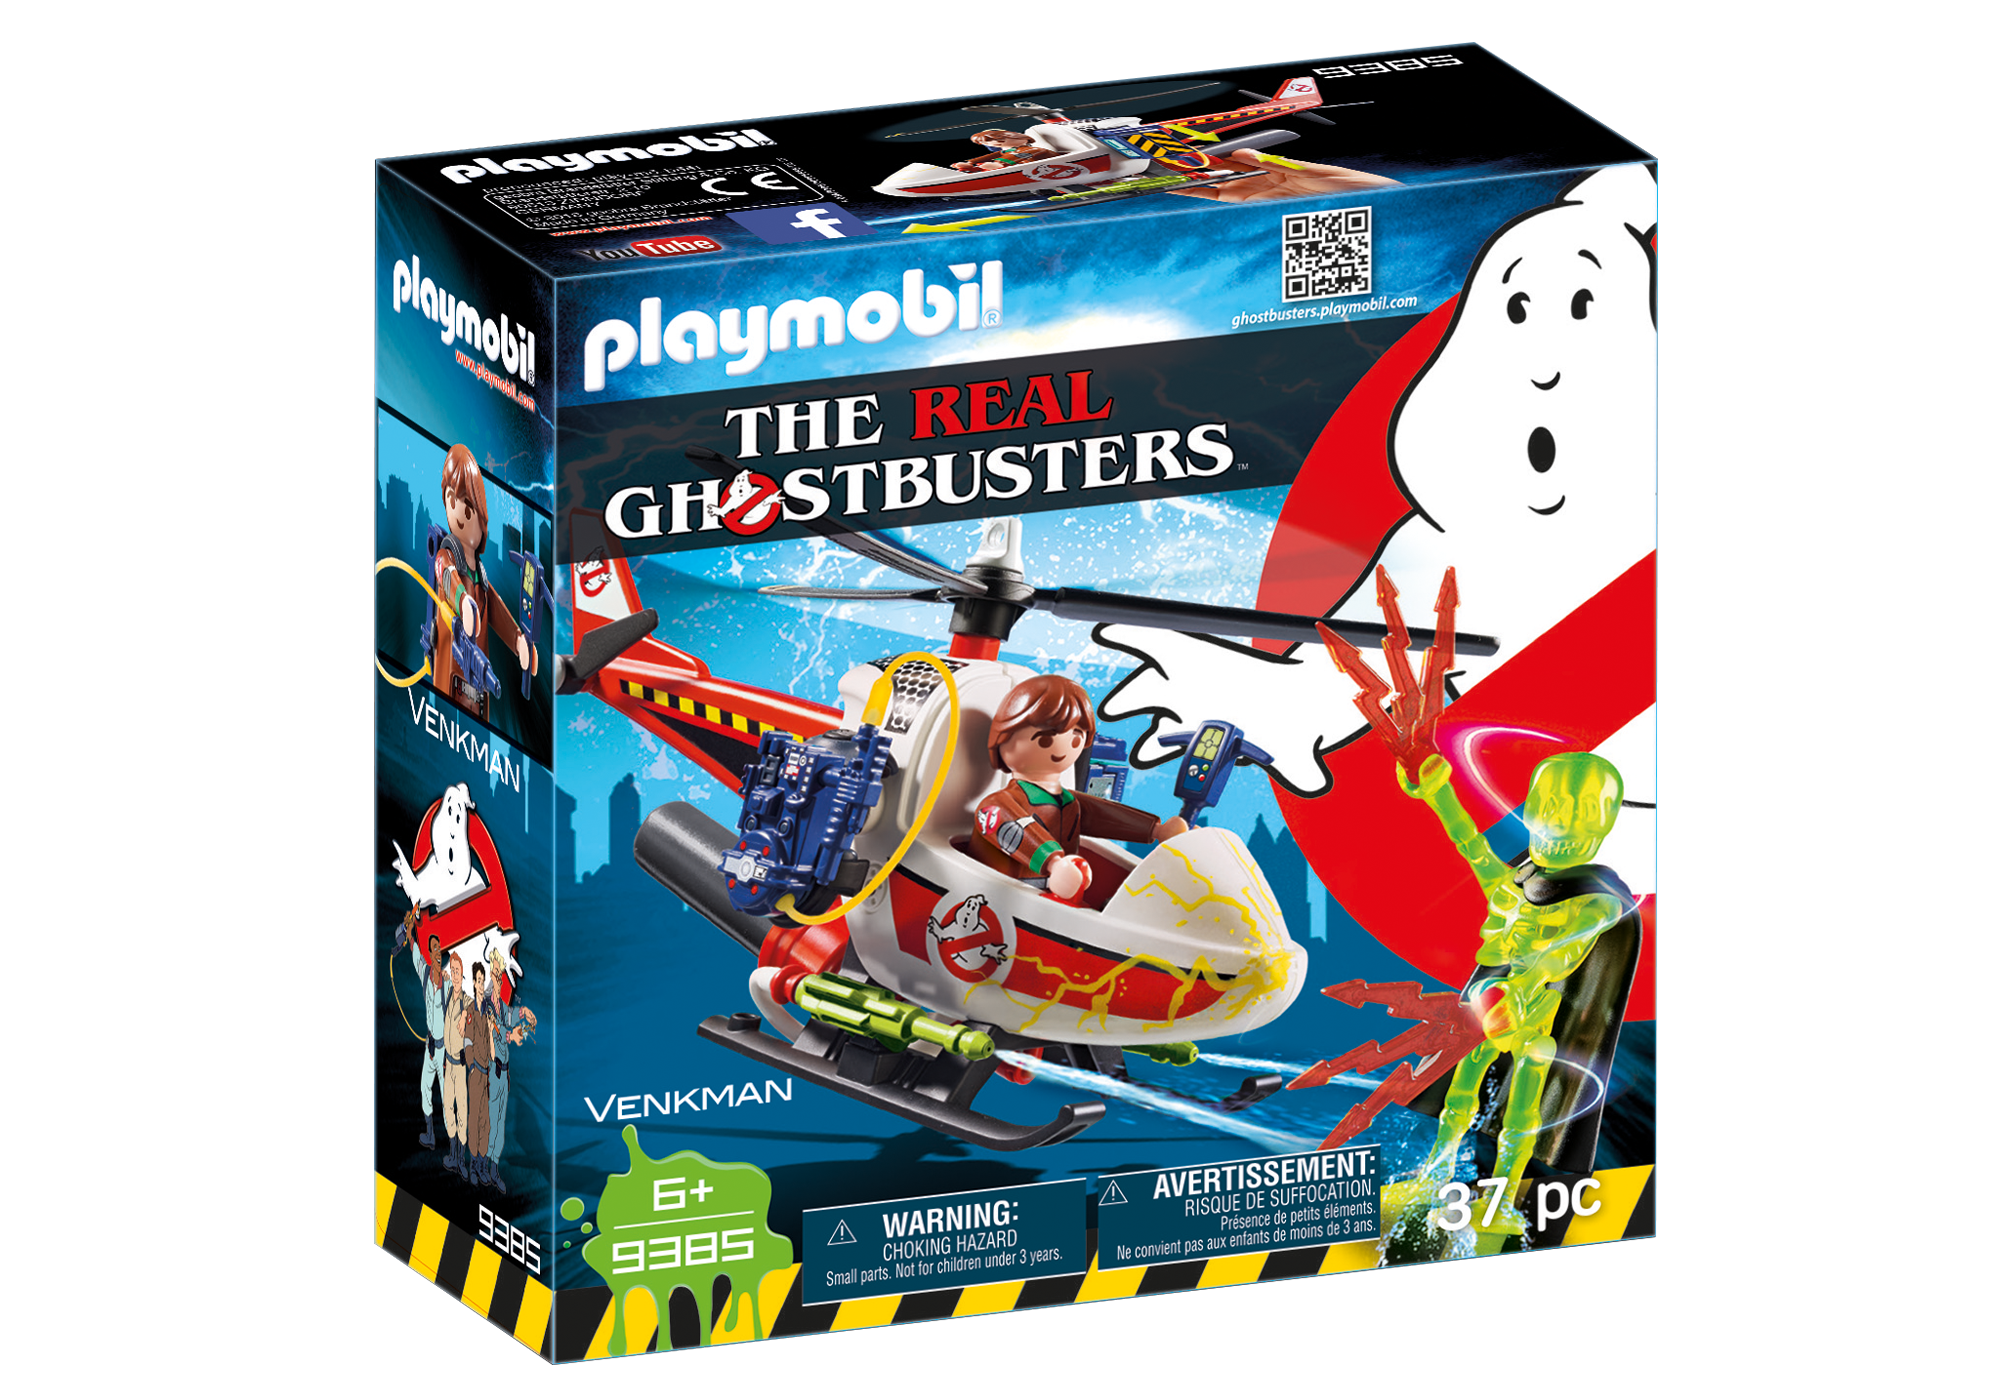 Playmobil Ghostbusters - Page 3 9385_product_box_front?locale=de-DE,de,*&$pdp_product_main_xl$